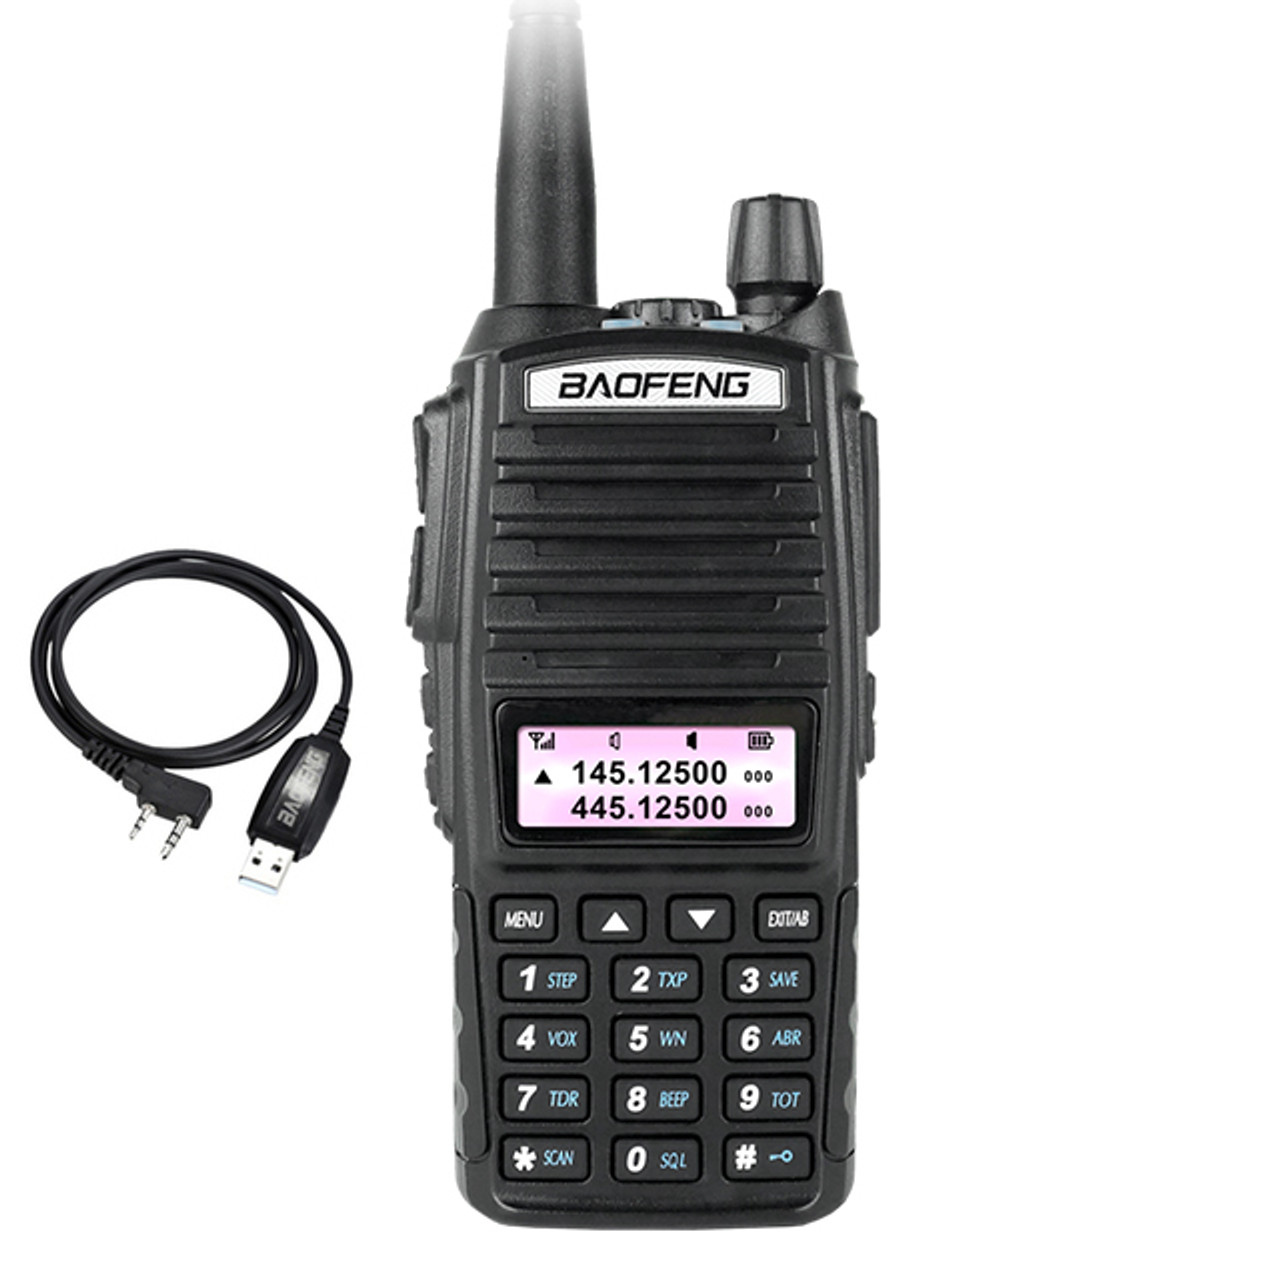 Radio portative Baofeng UV-82, deux canaux (VHF / UHF) - boutique